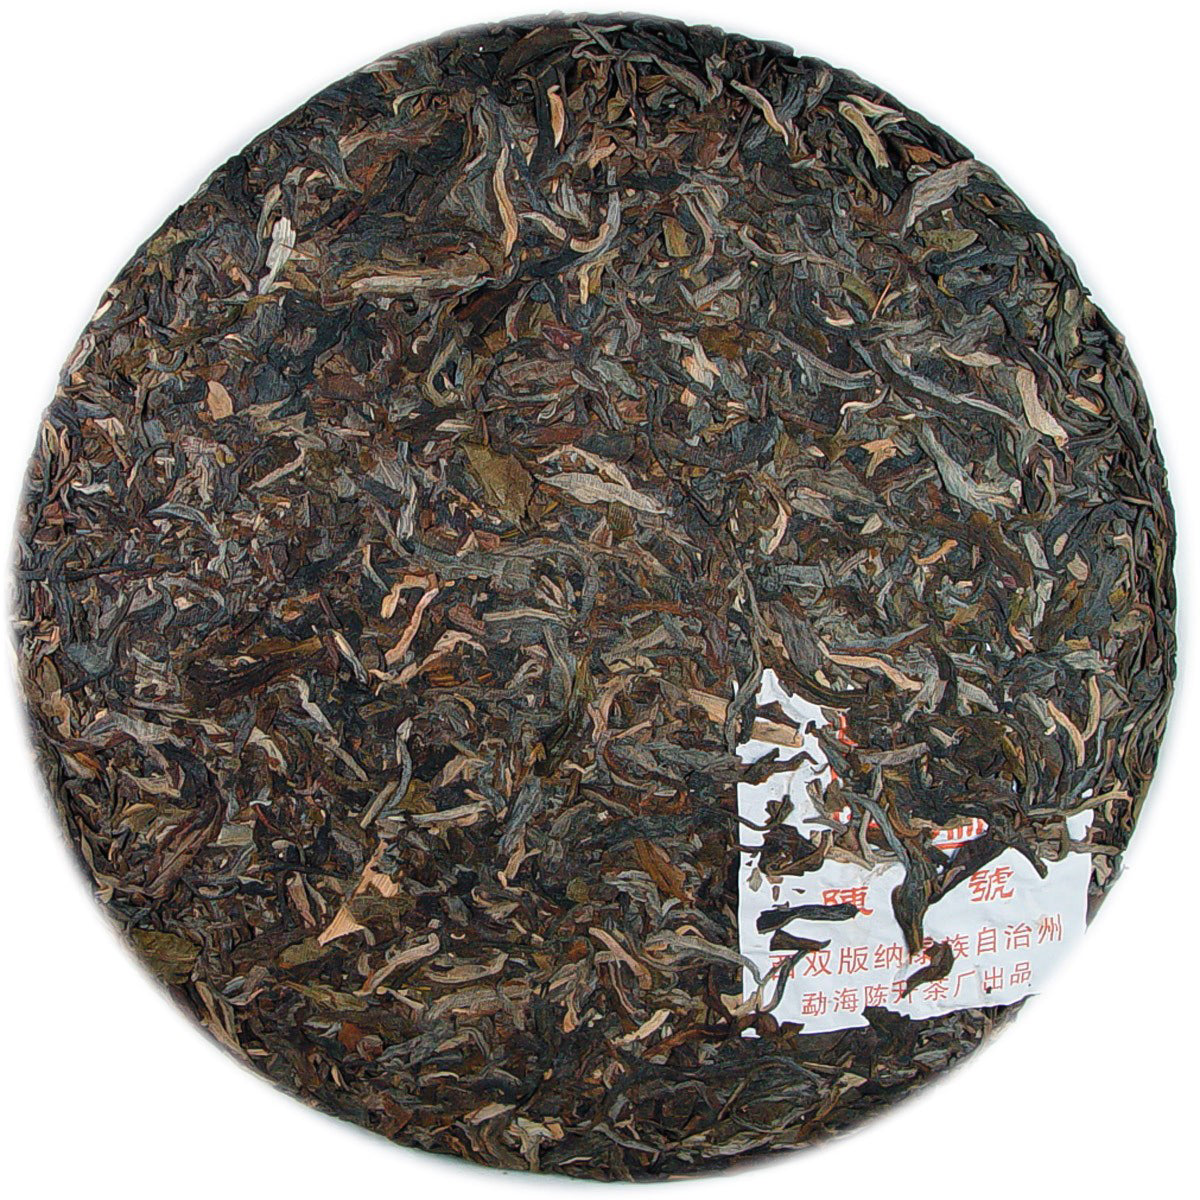 
                  
                    2007 Chen Sheng Hao 7542 Raw Pu-erh Tea
                  
                